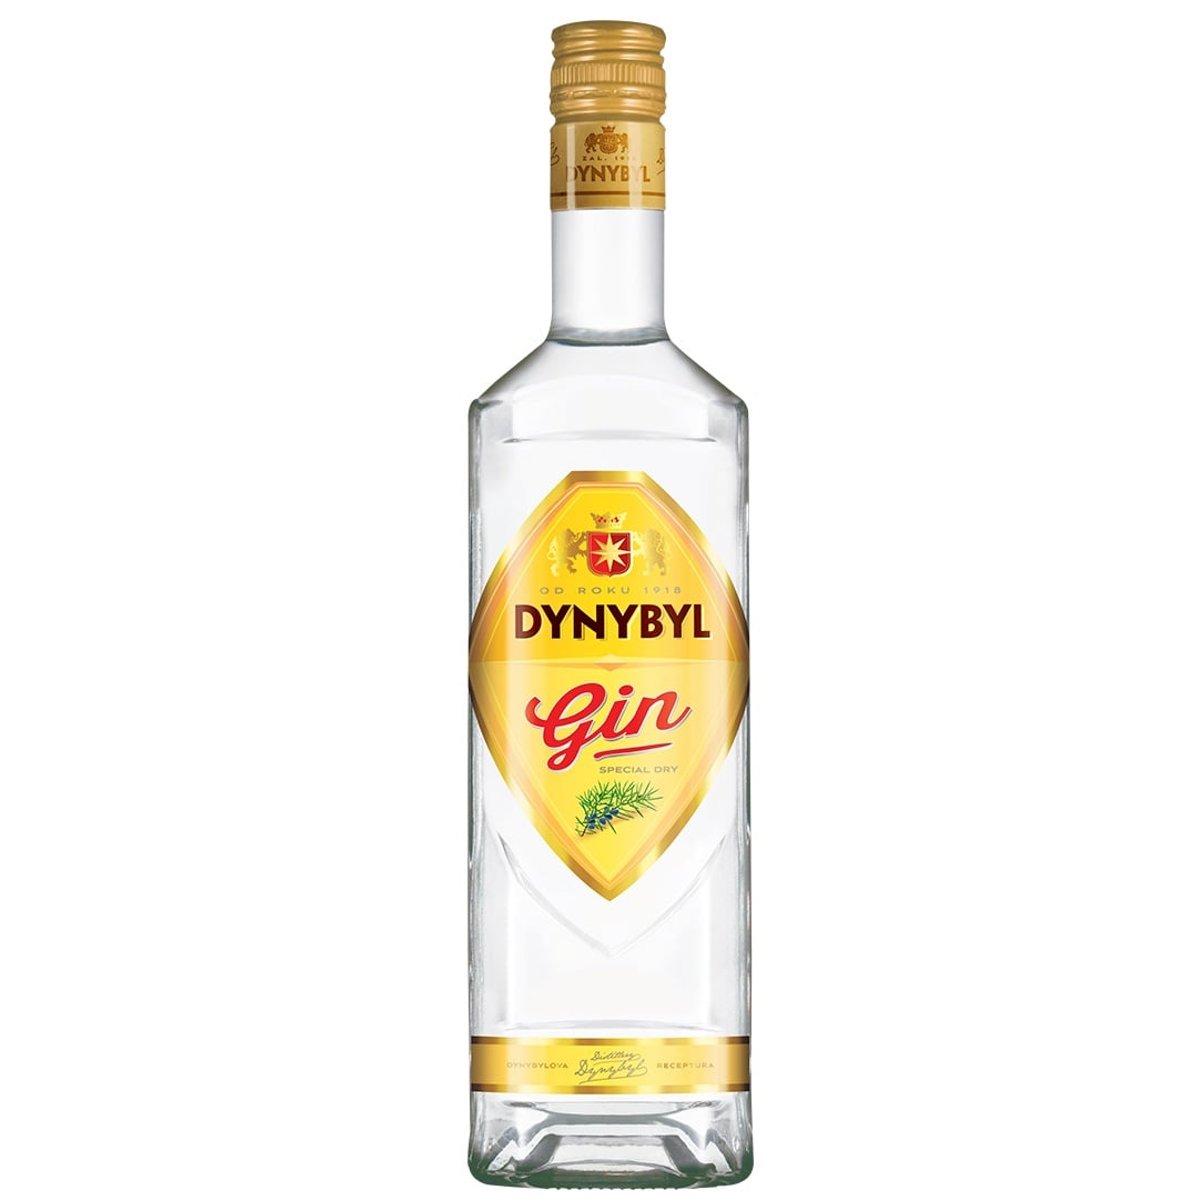 Dynybyl special Dry Gin 37,5%